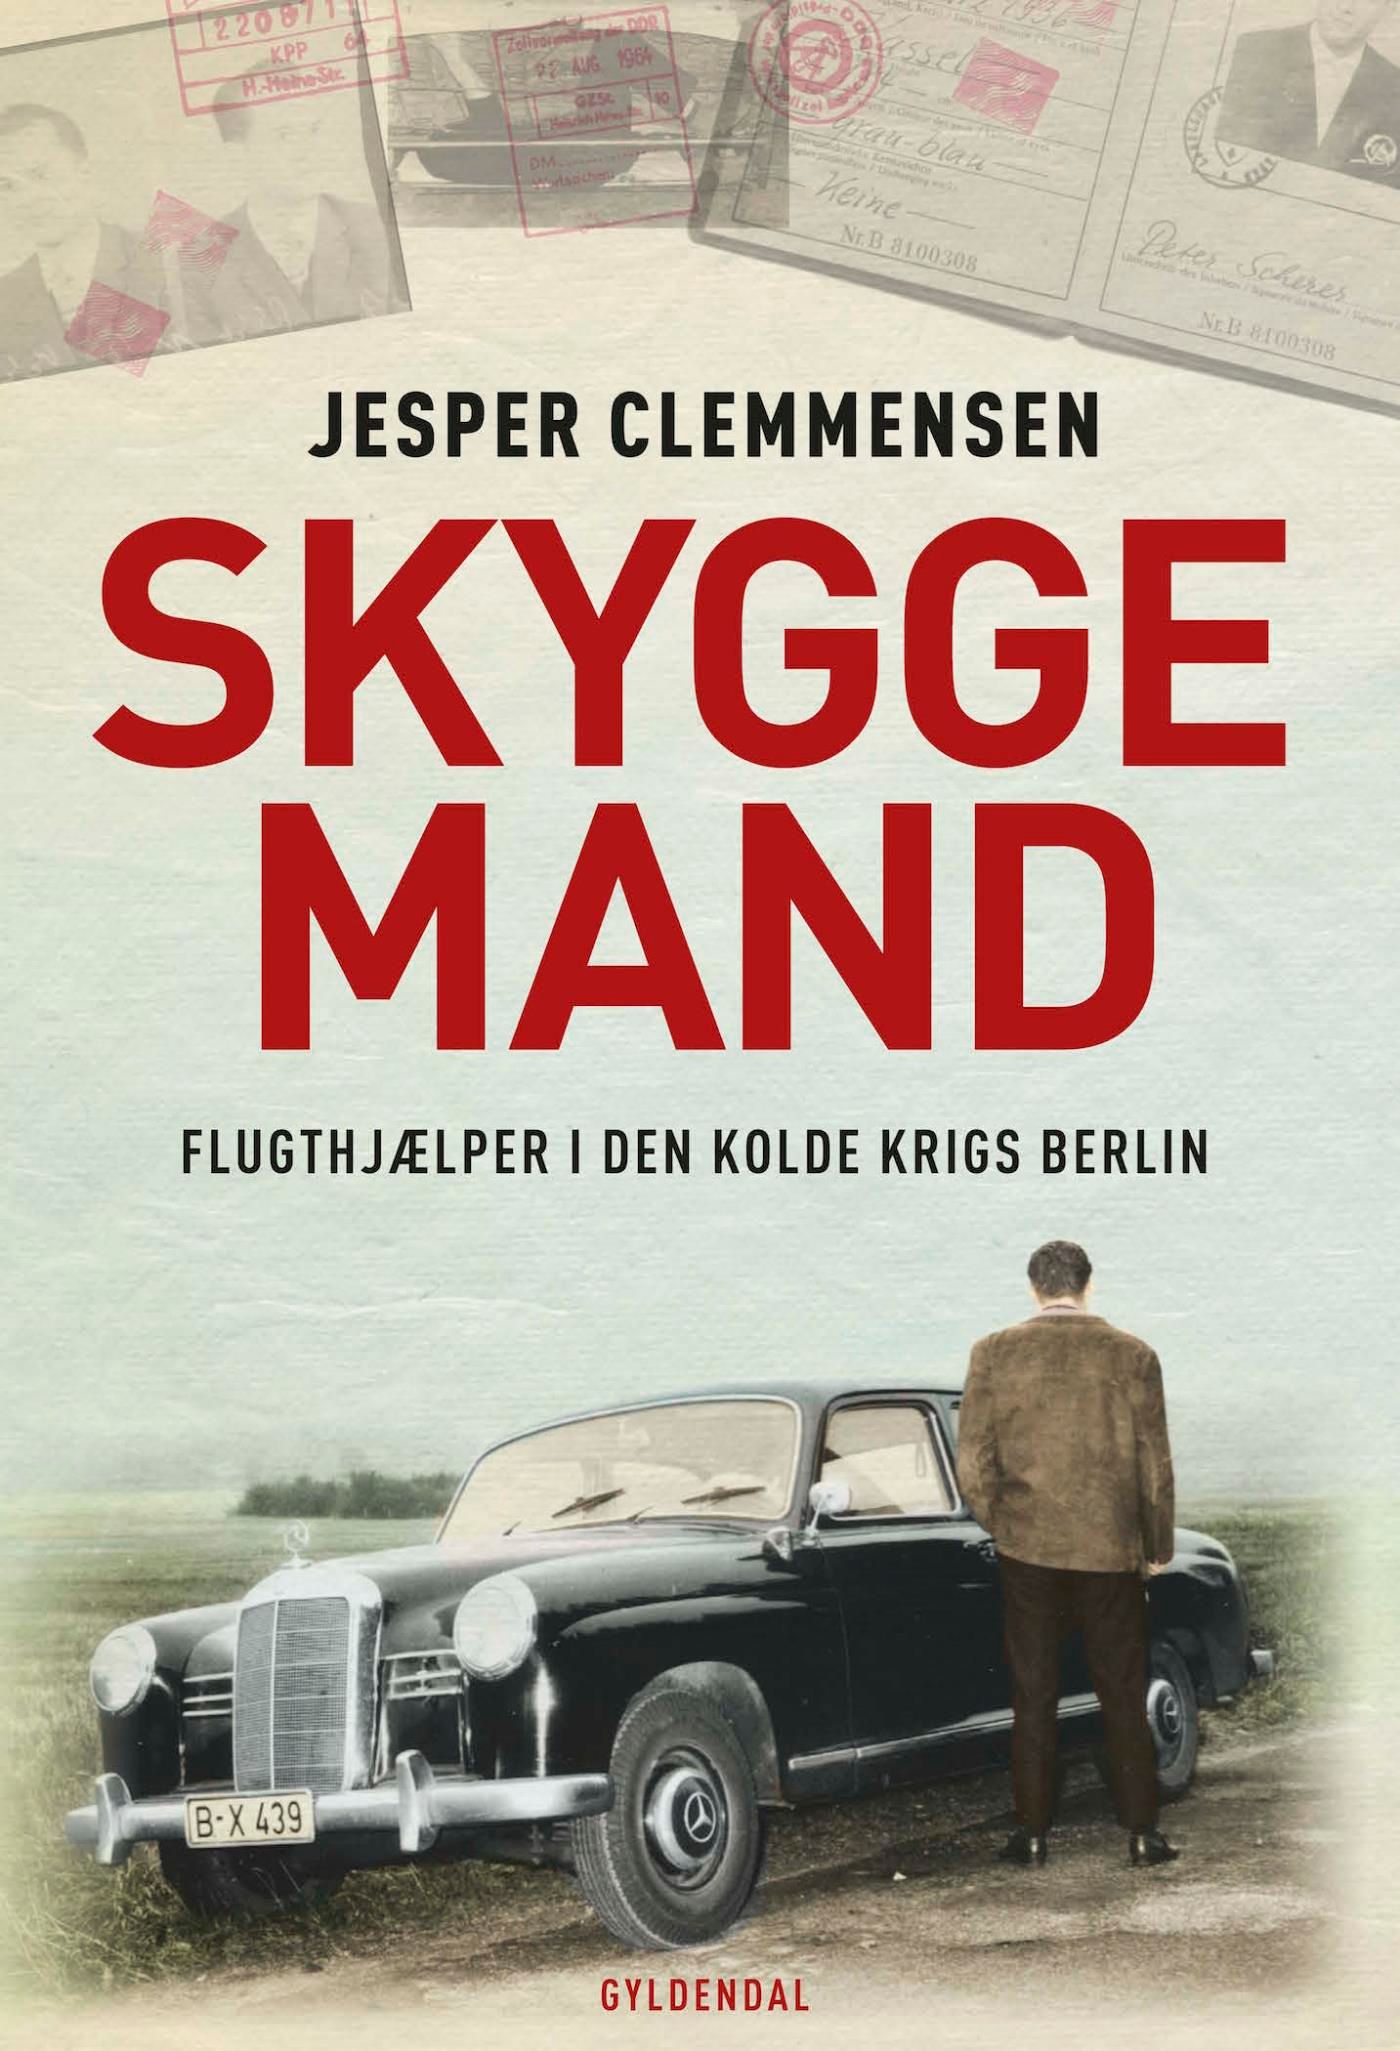 Skyggemand, e-bog af Jesper Clemmensen